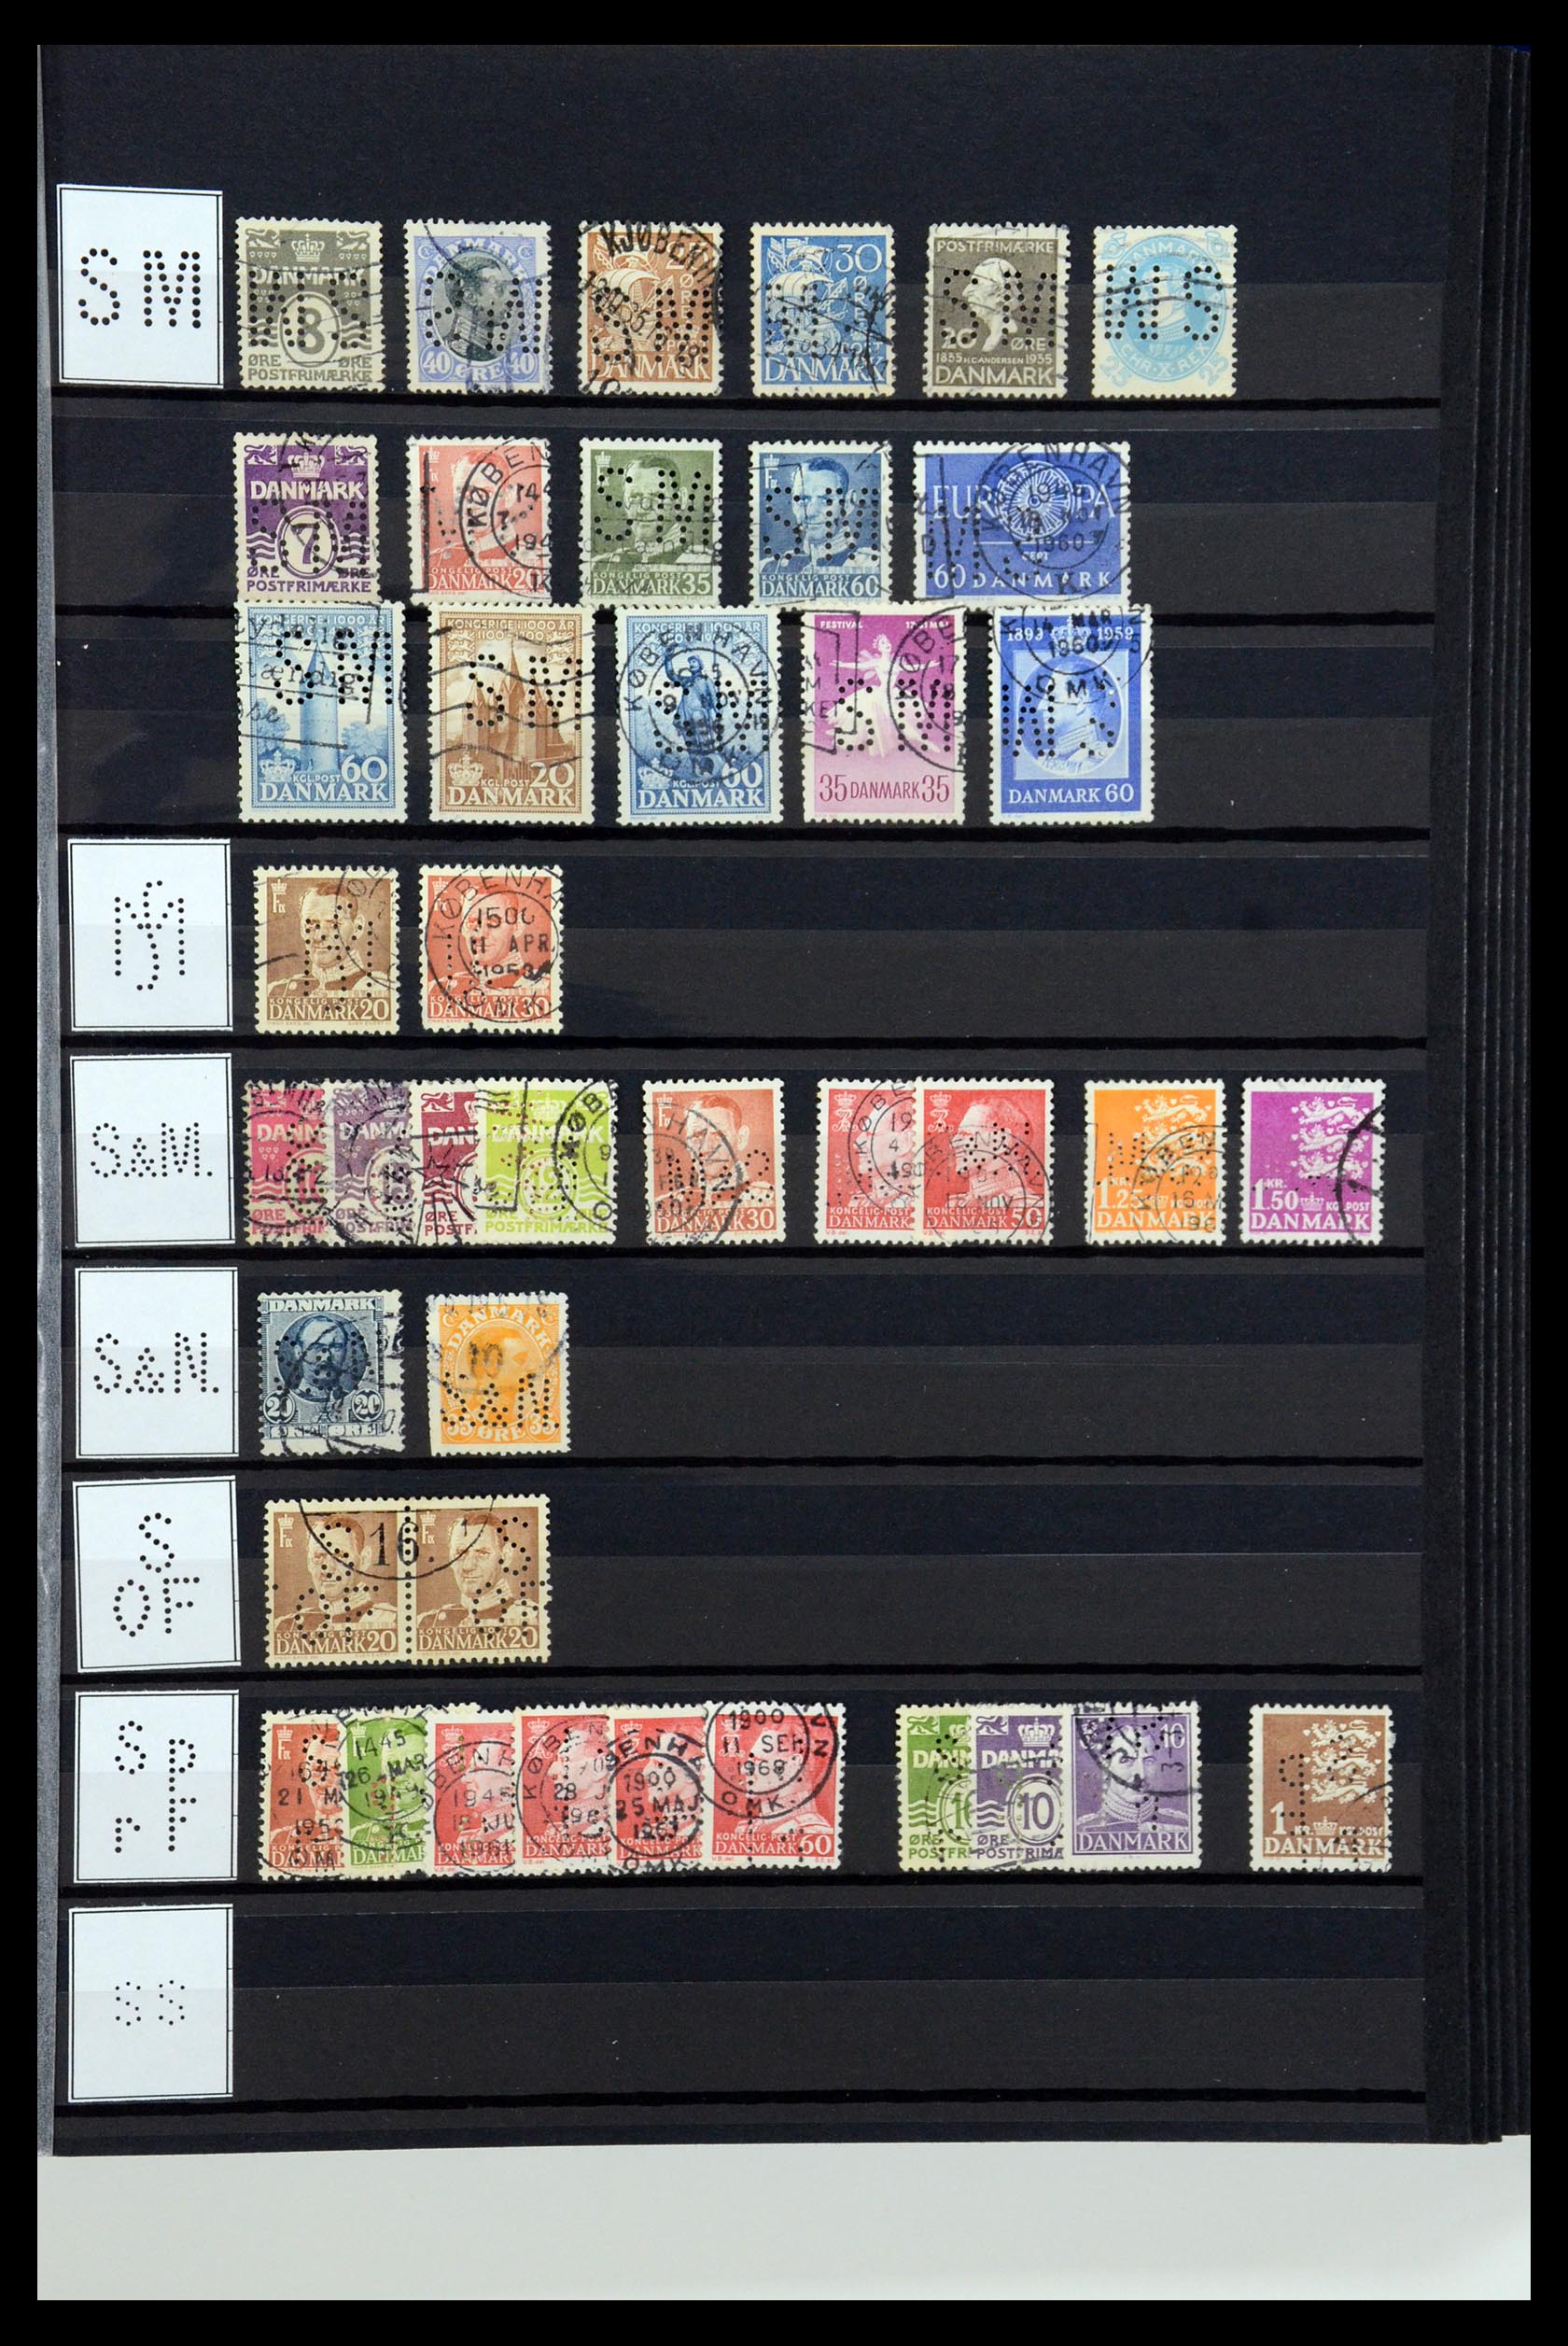 36396 209 - Postzegelverzameling 36396 Denemarken perfins.